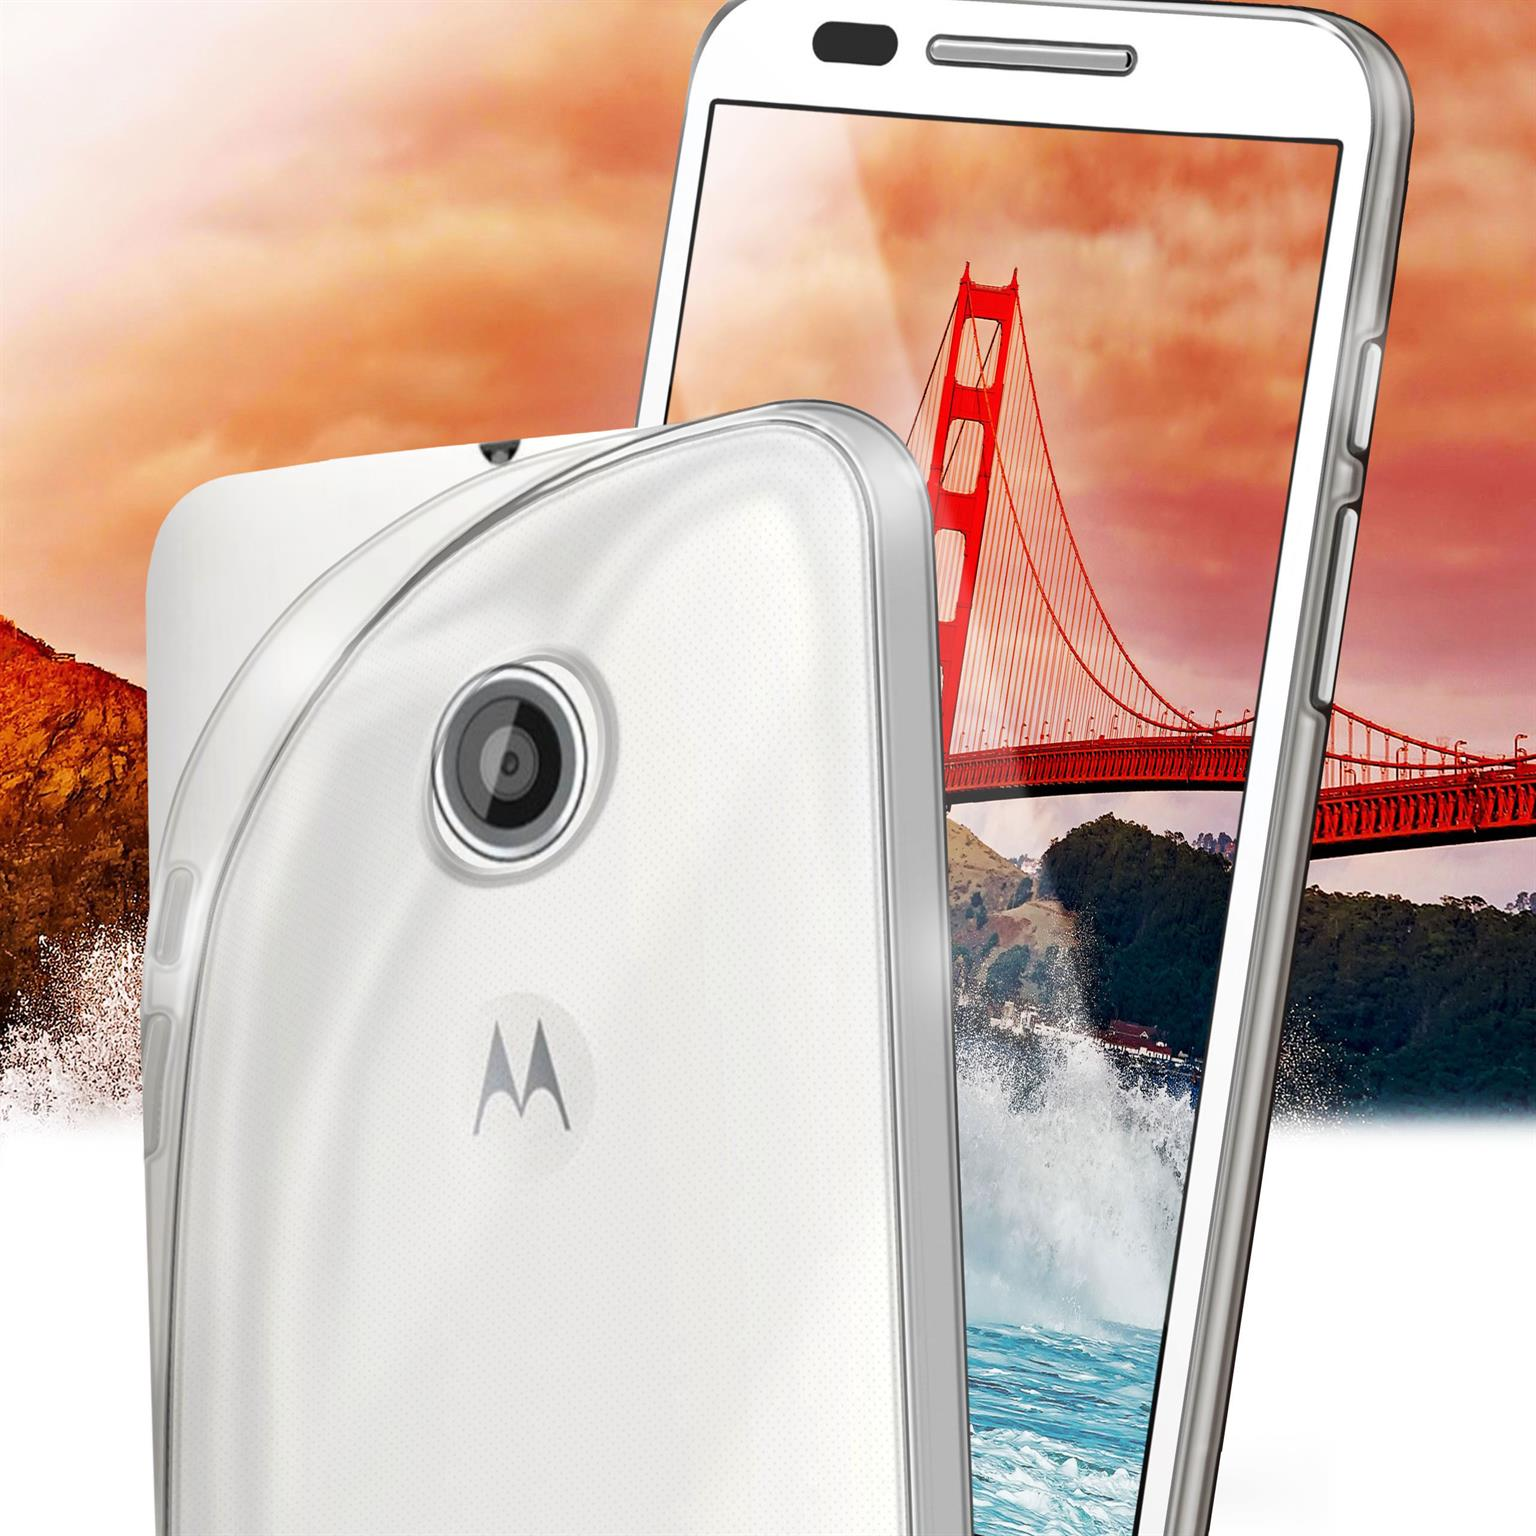 MOEX Aero Case, Backcover, Motorola, Crystal-Clear Moto E